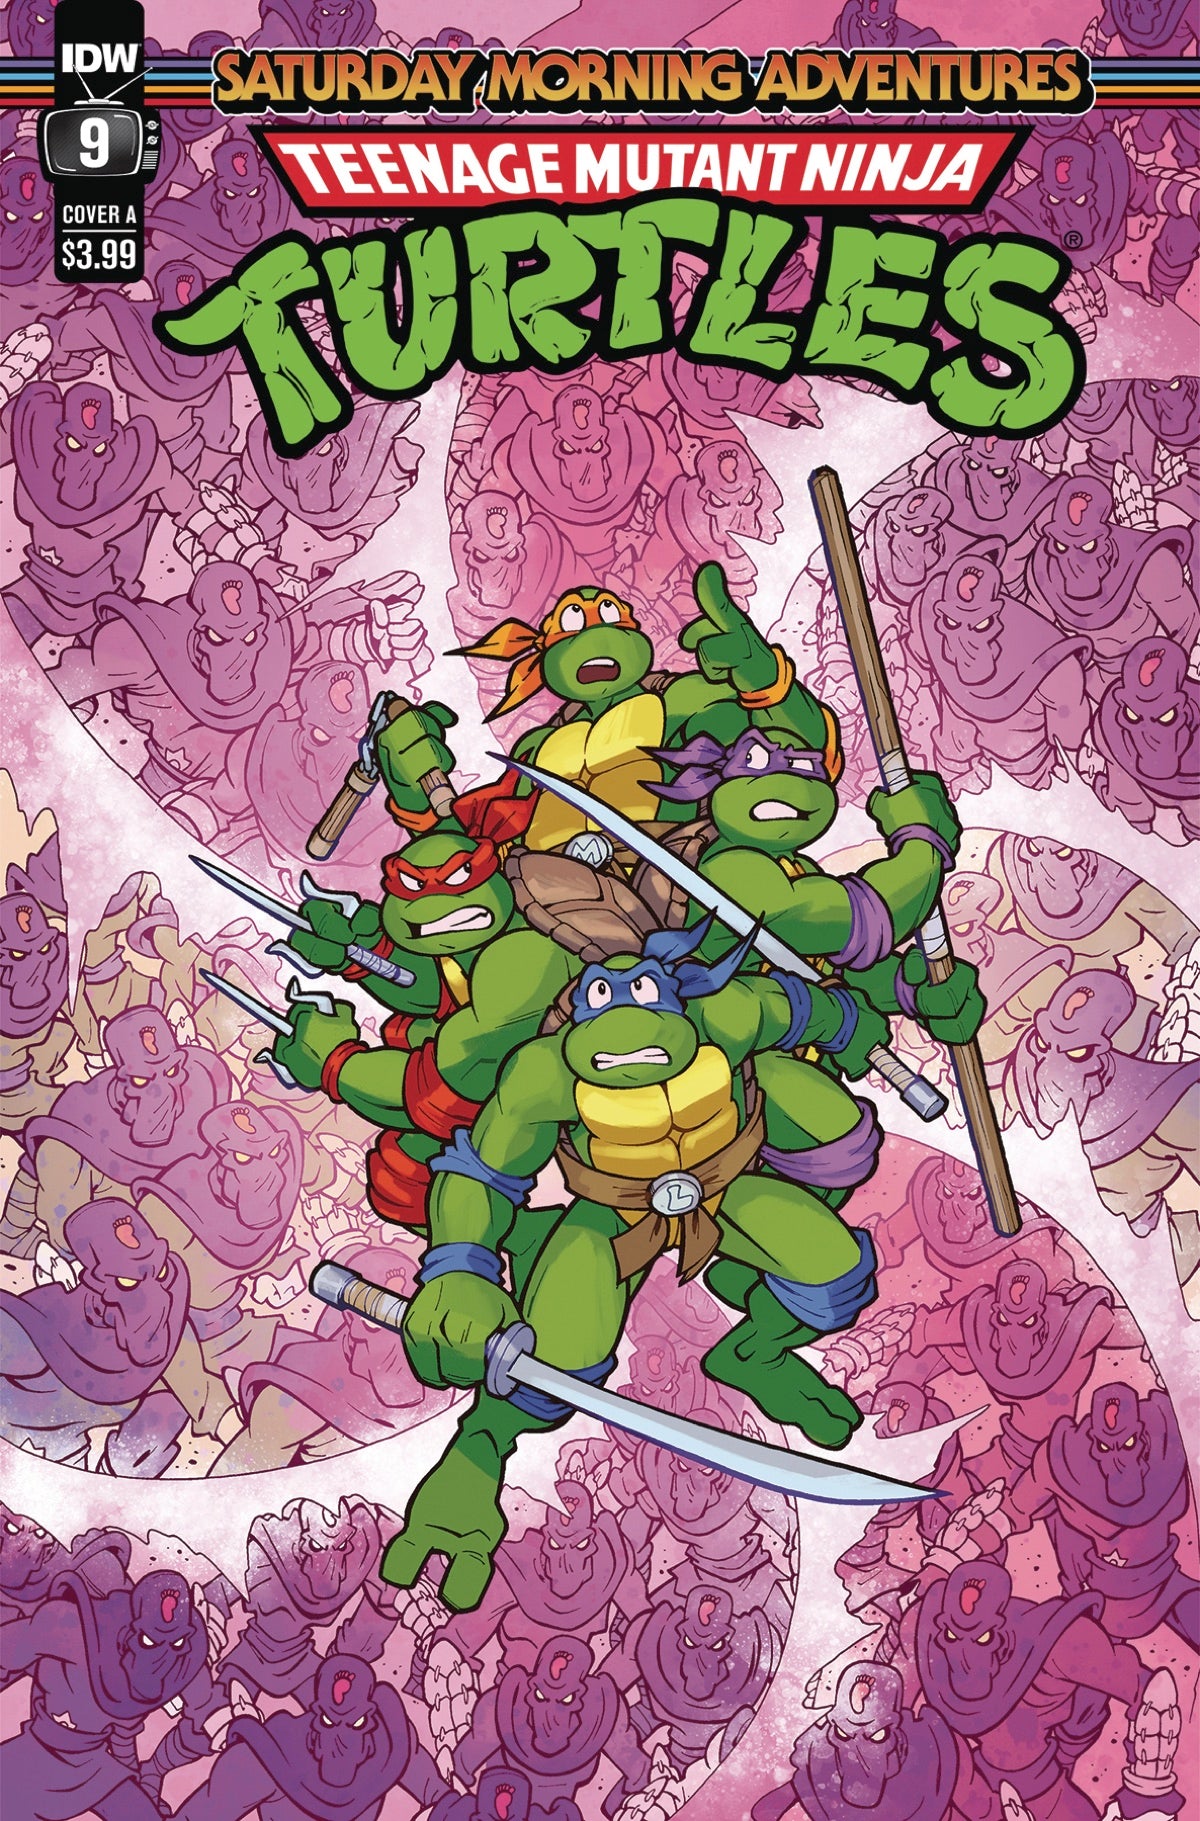 Teenage Mutant Ninja Turtles: Saturday Morning Adventures Continued #9A